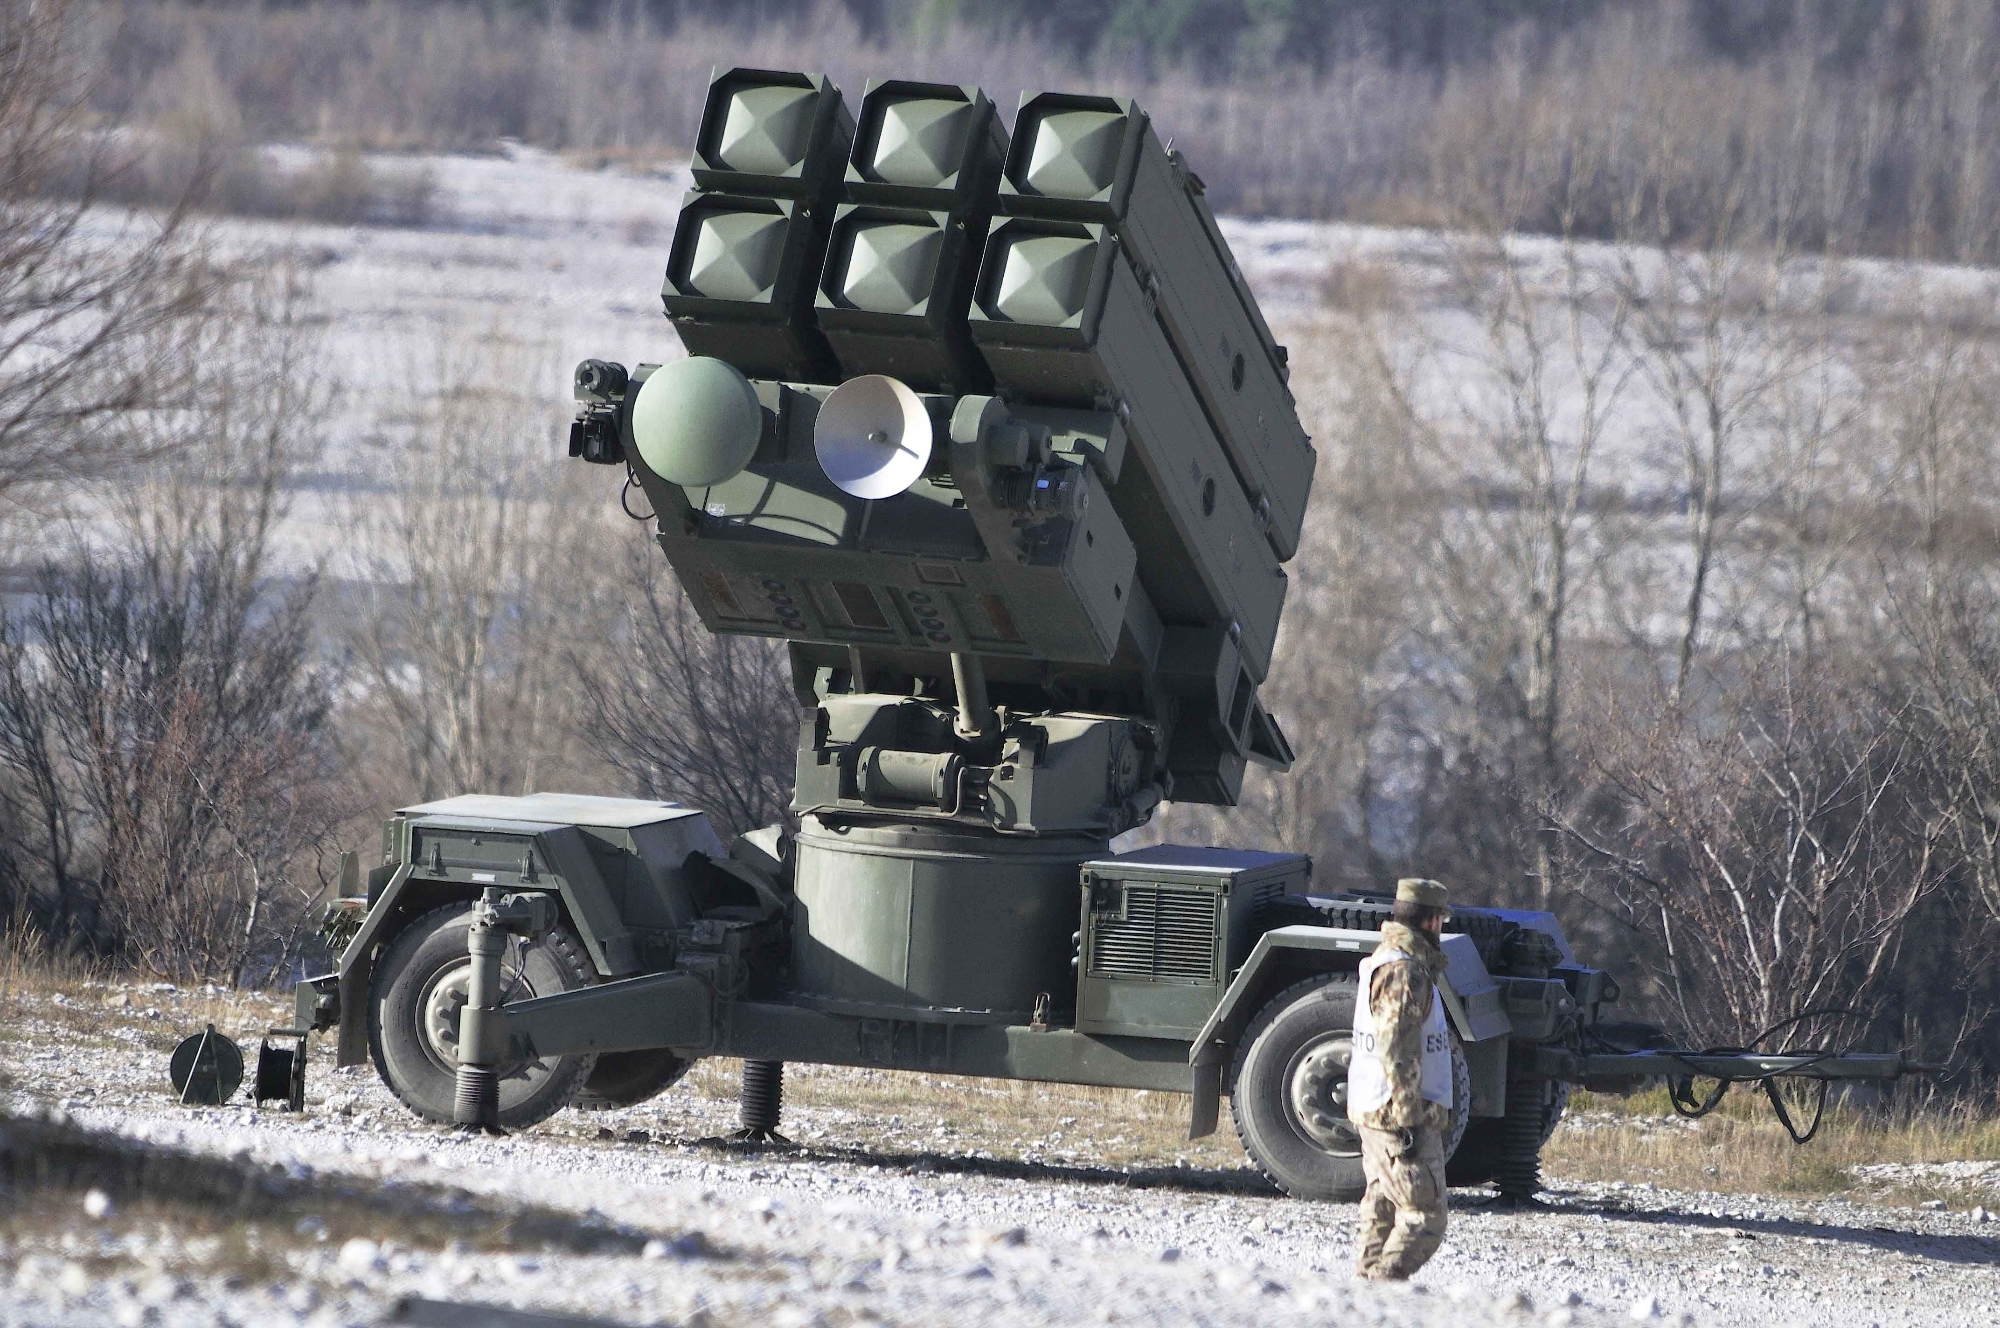 Systèmes de défense aérienne Aspide, système de défense aérienne Hawk, ATGM et lance-grenades : L'Espagne accorde à l'Ukraine un nouveau paquet d'aide militaire